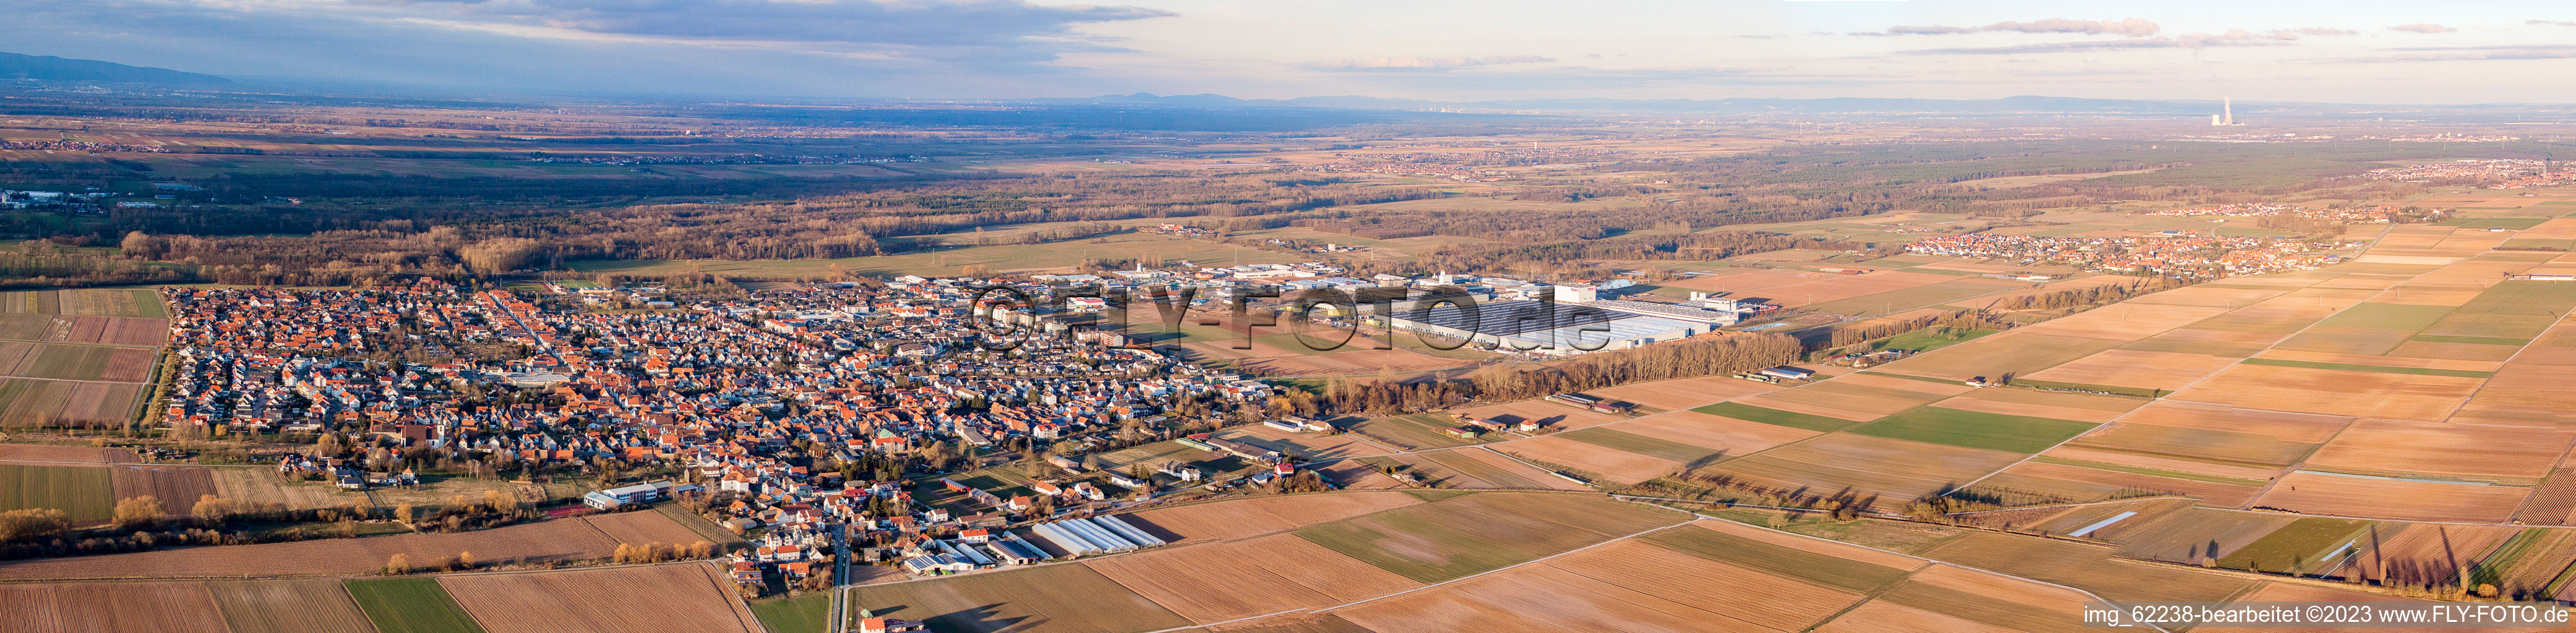 Luftbild von Panorama in Offenbach an der Queich im Bundesland Rheinland-Pfalz, Deutschland